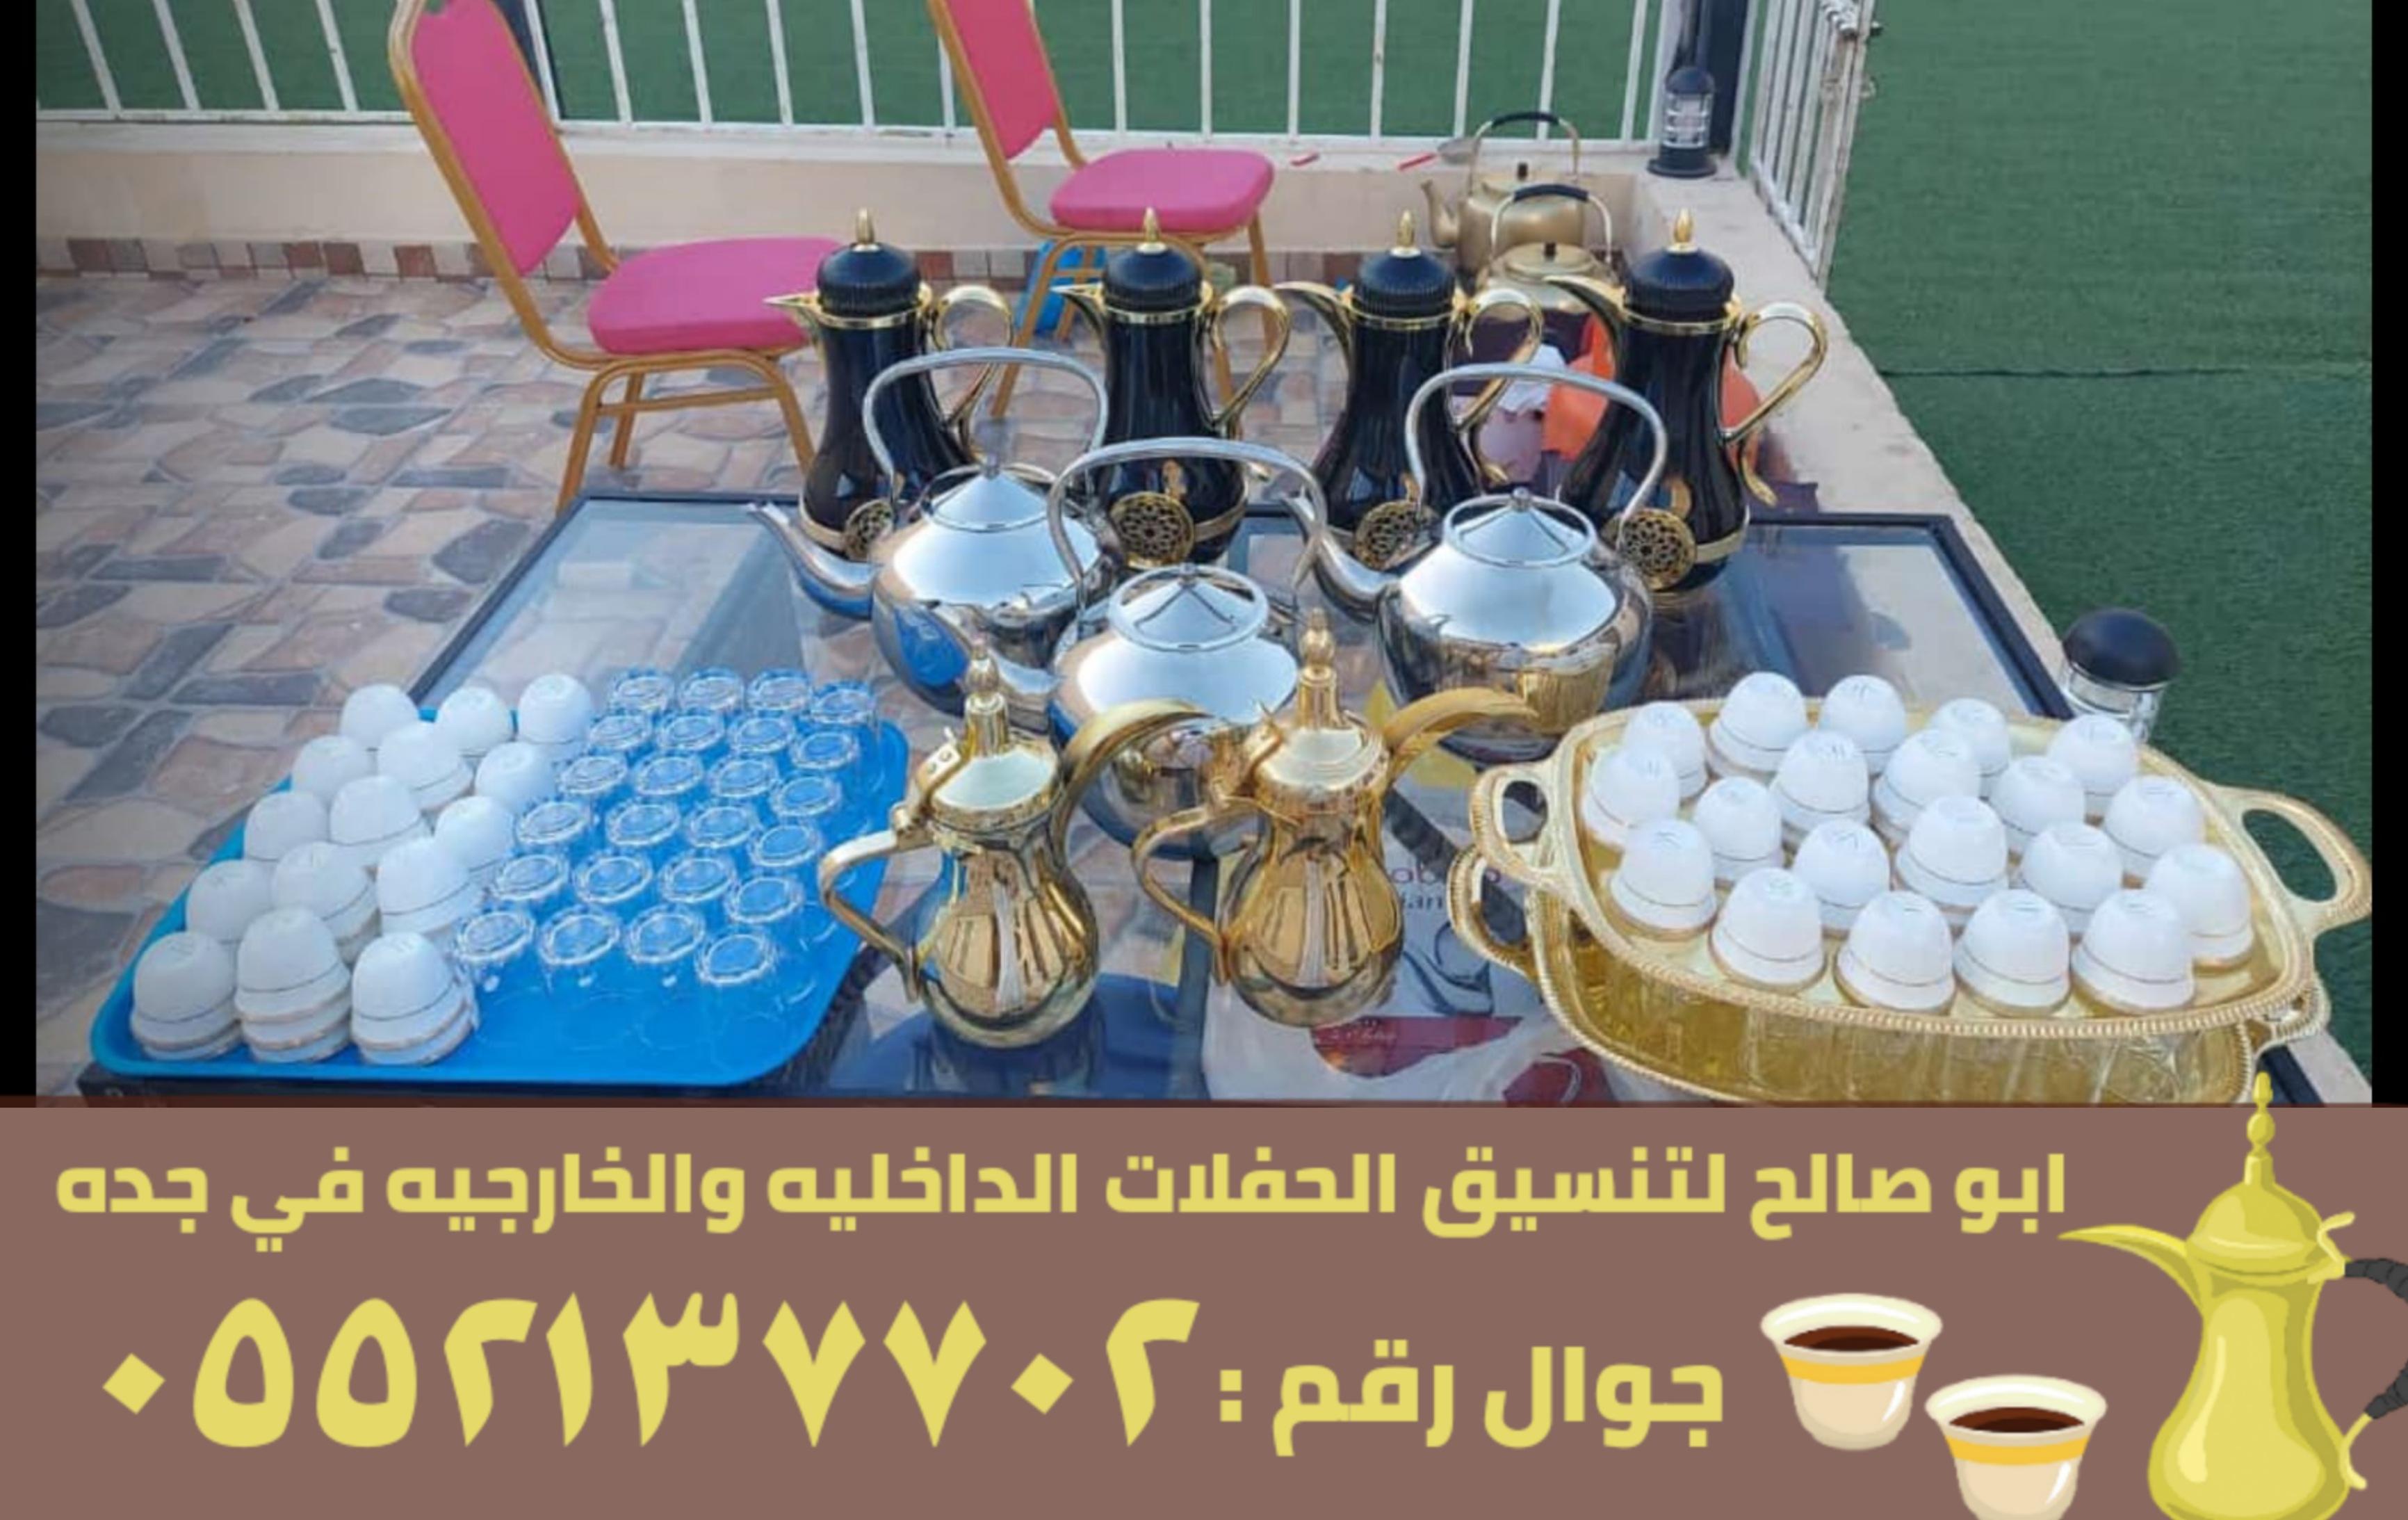 صبابين قهوة مباشرين في جدة,0552137702 363291956